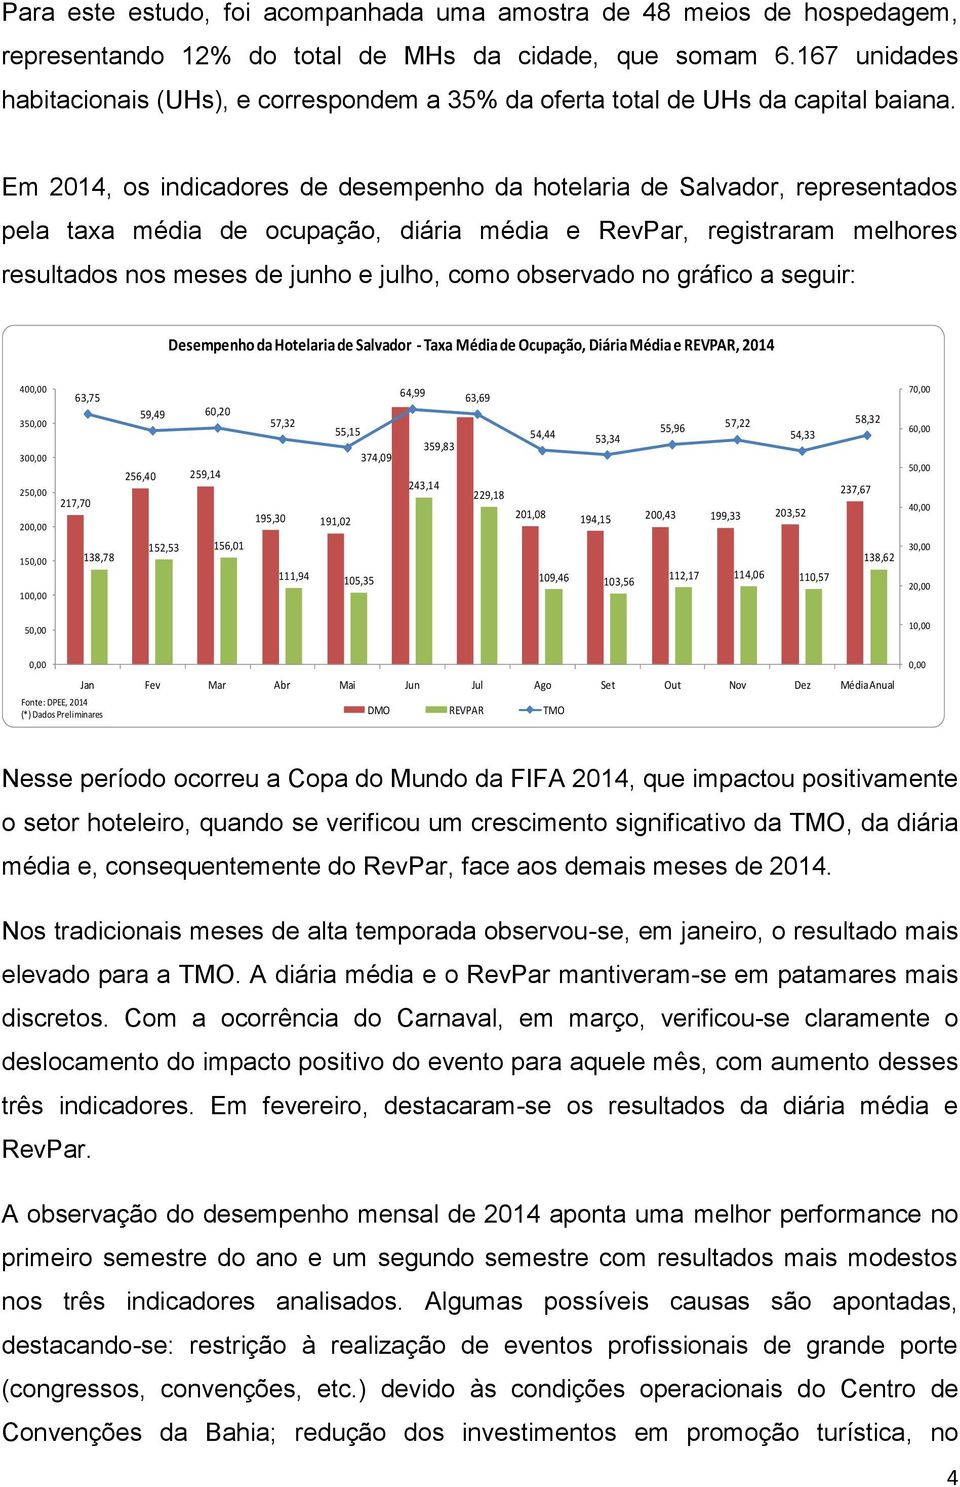 Em 2014, os indicadores de desempenho da hotelaria de Salvador, representados pela taxa média de ocupação, diária média e RevPar, registraram melhores resultados nos meses de junho e julho, como